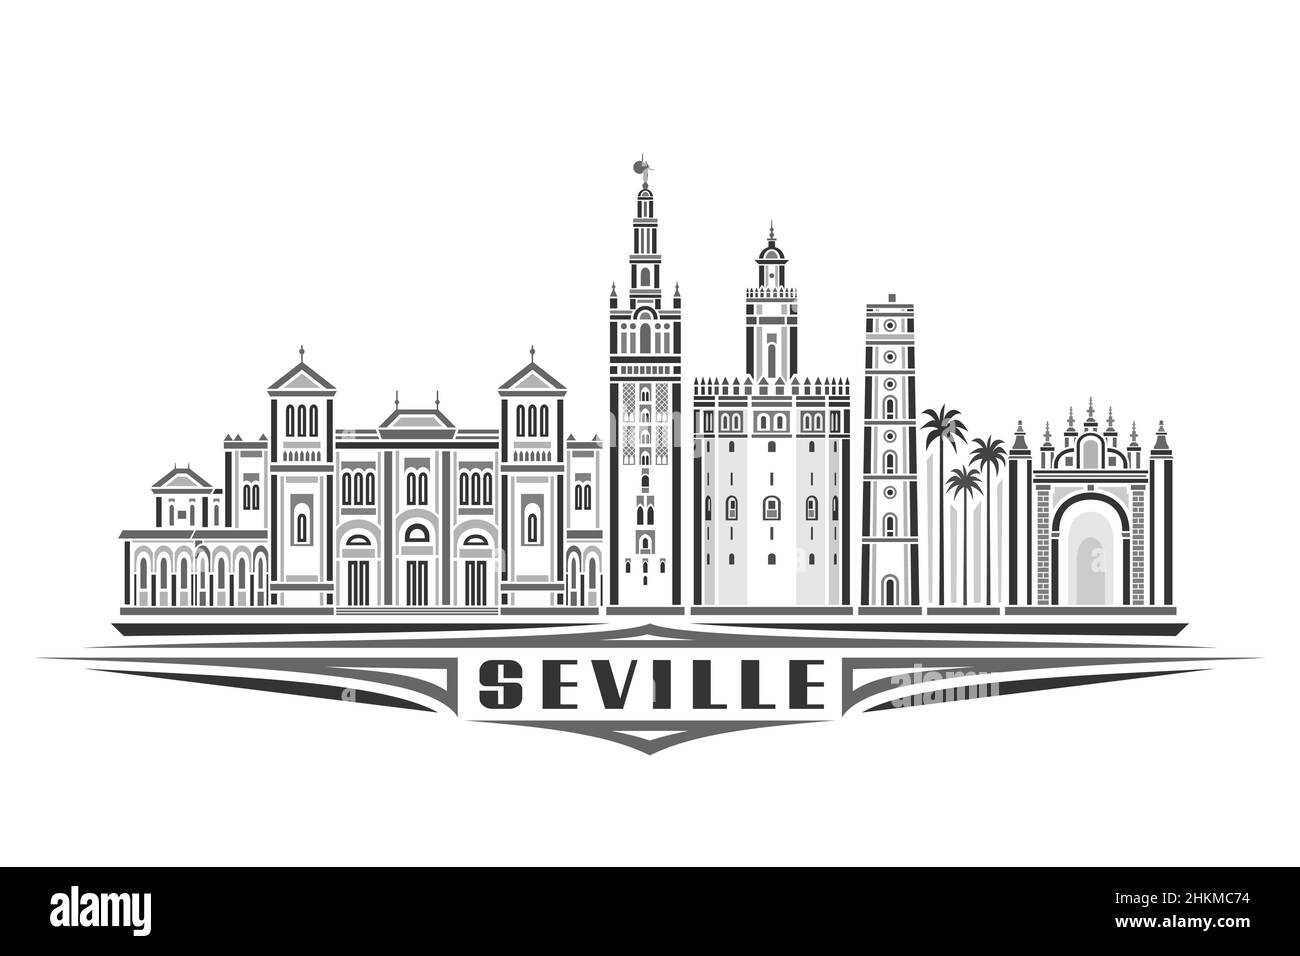 Vektor-Illustration von Sevilla, monochromes horizontales Poster mit linearem Design berühmte sevillas Stadtlandschaft, urbanes Linienkunstkonzept mit dekorativem lett Stock Vektor